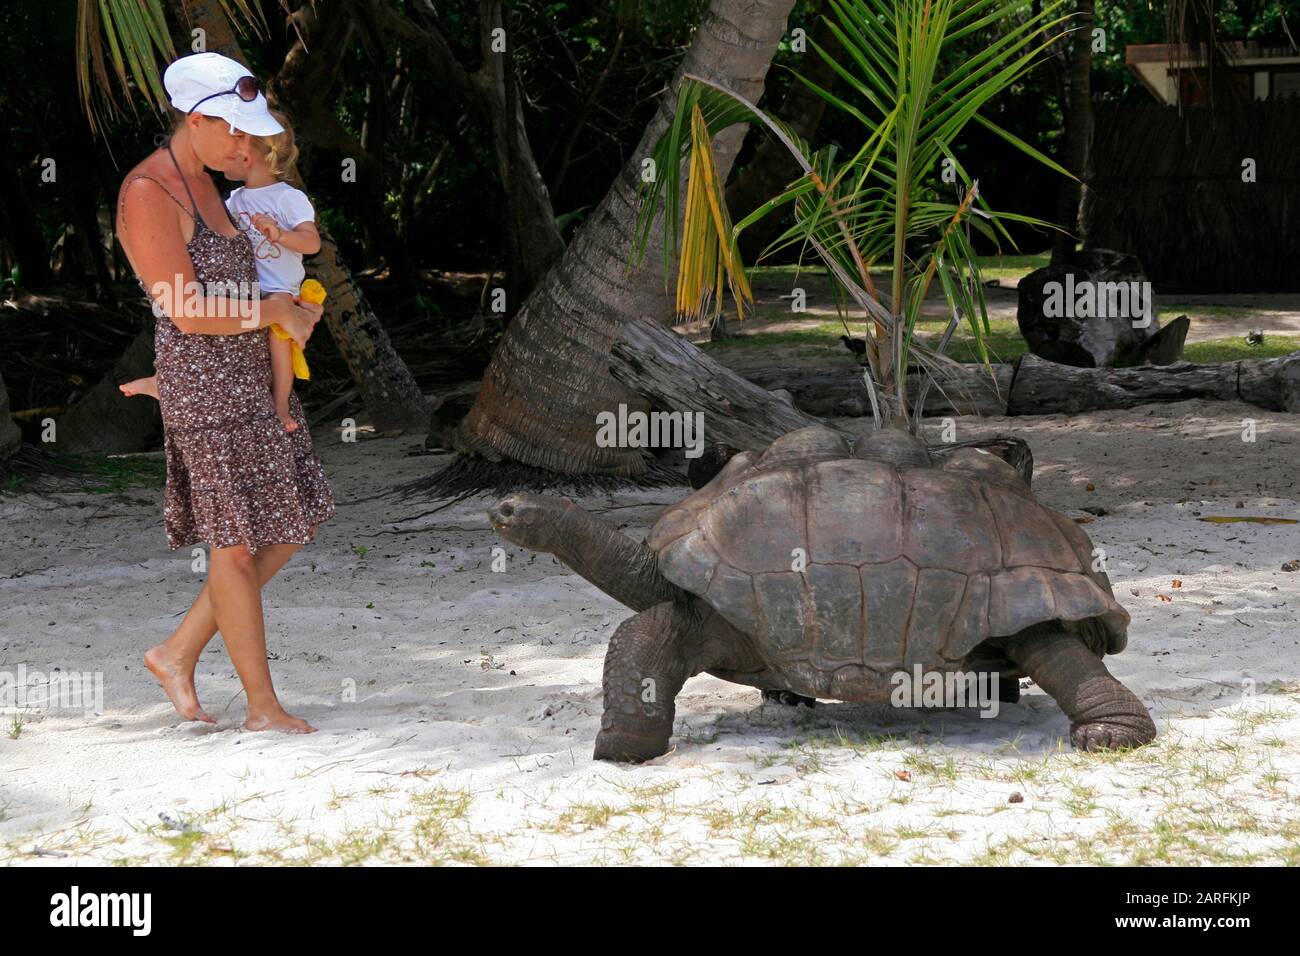 La tortue géante Aldabra et le touriste sur la plage, (Aldabrachelys gigantea), l'île de Curieuse, Seychelles. Banque D'Images